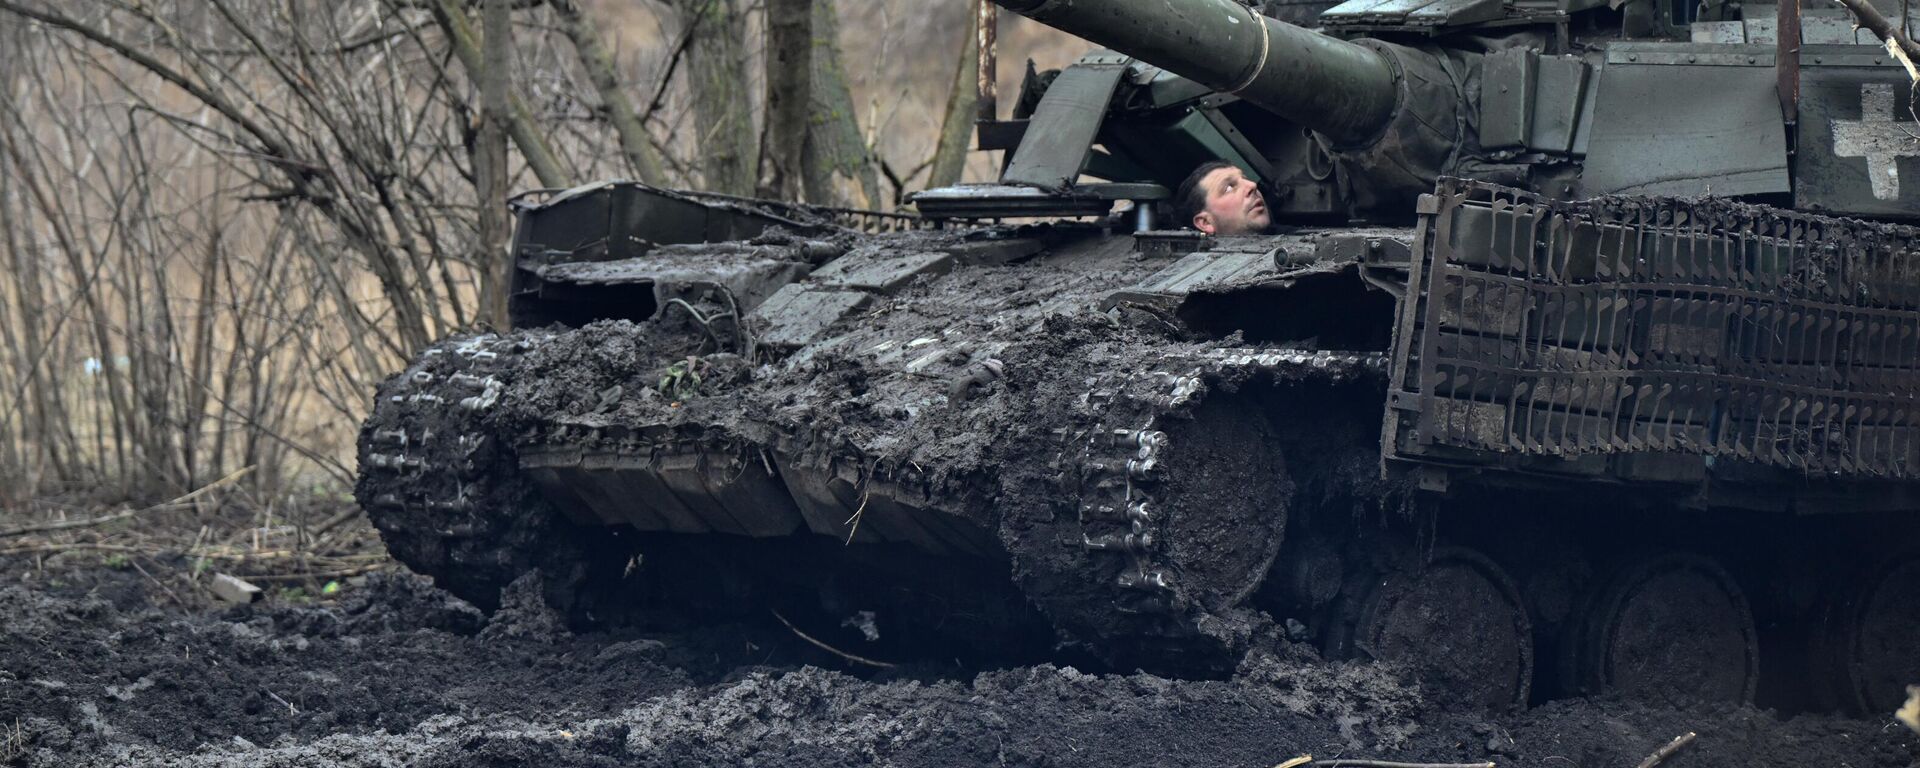 Militares ucranianos revisan su tanque después de un mantenimiento en la región de Donetsk, el 5 de febrero de 2024 - Sputnik Mundo, 1920, 21.05.2024